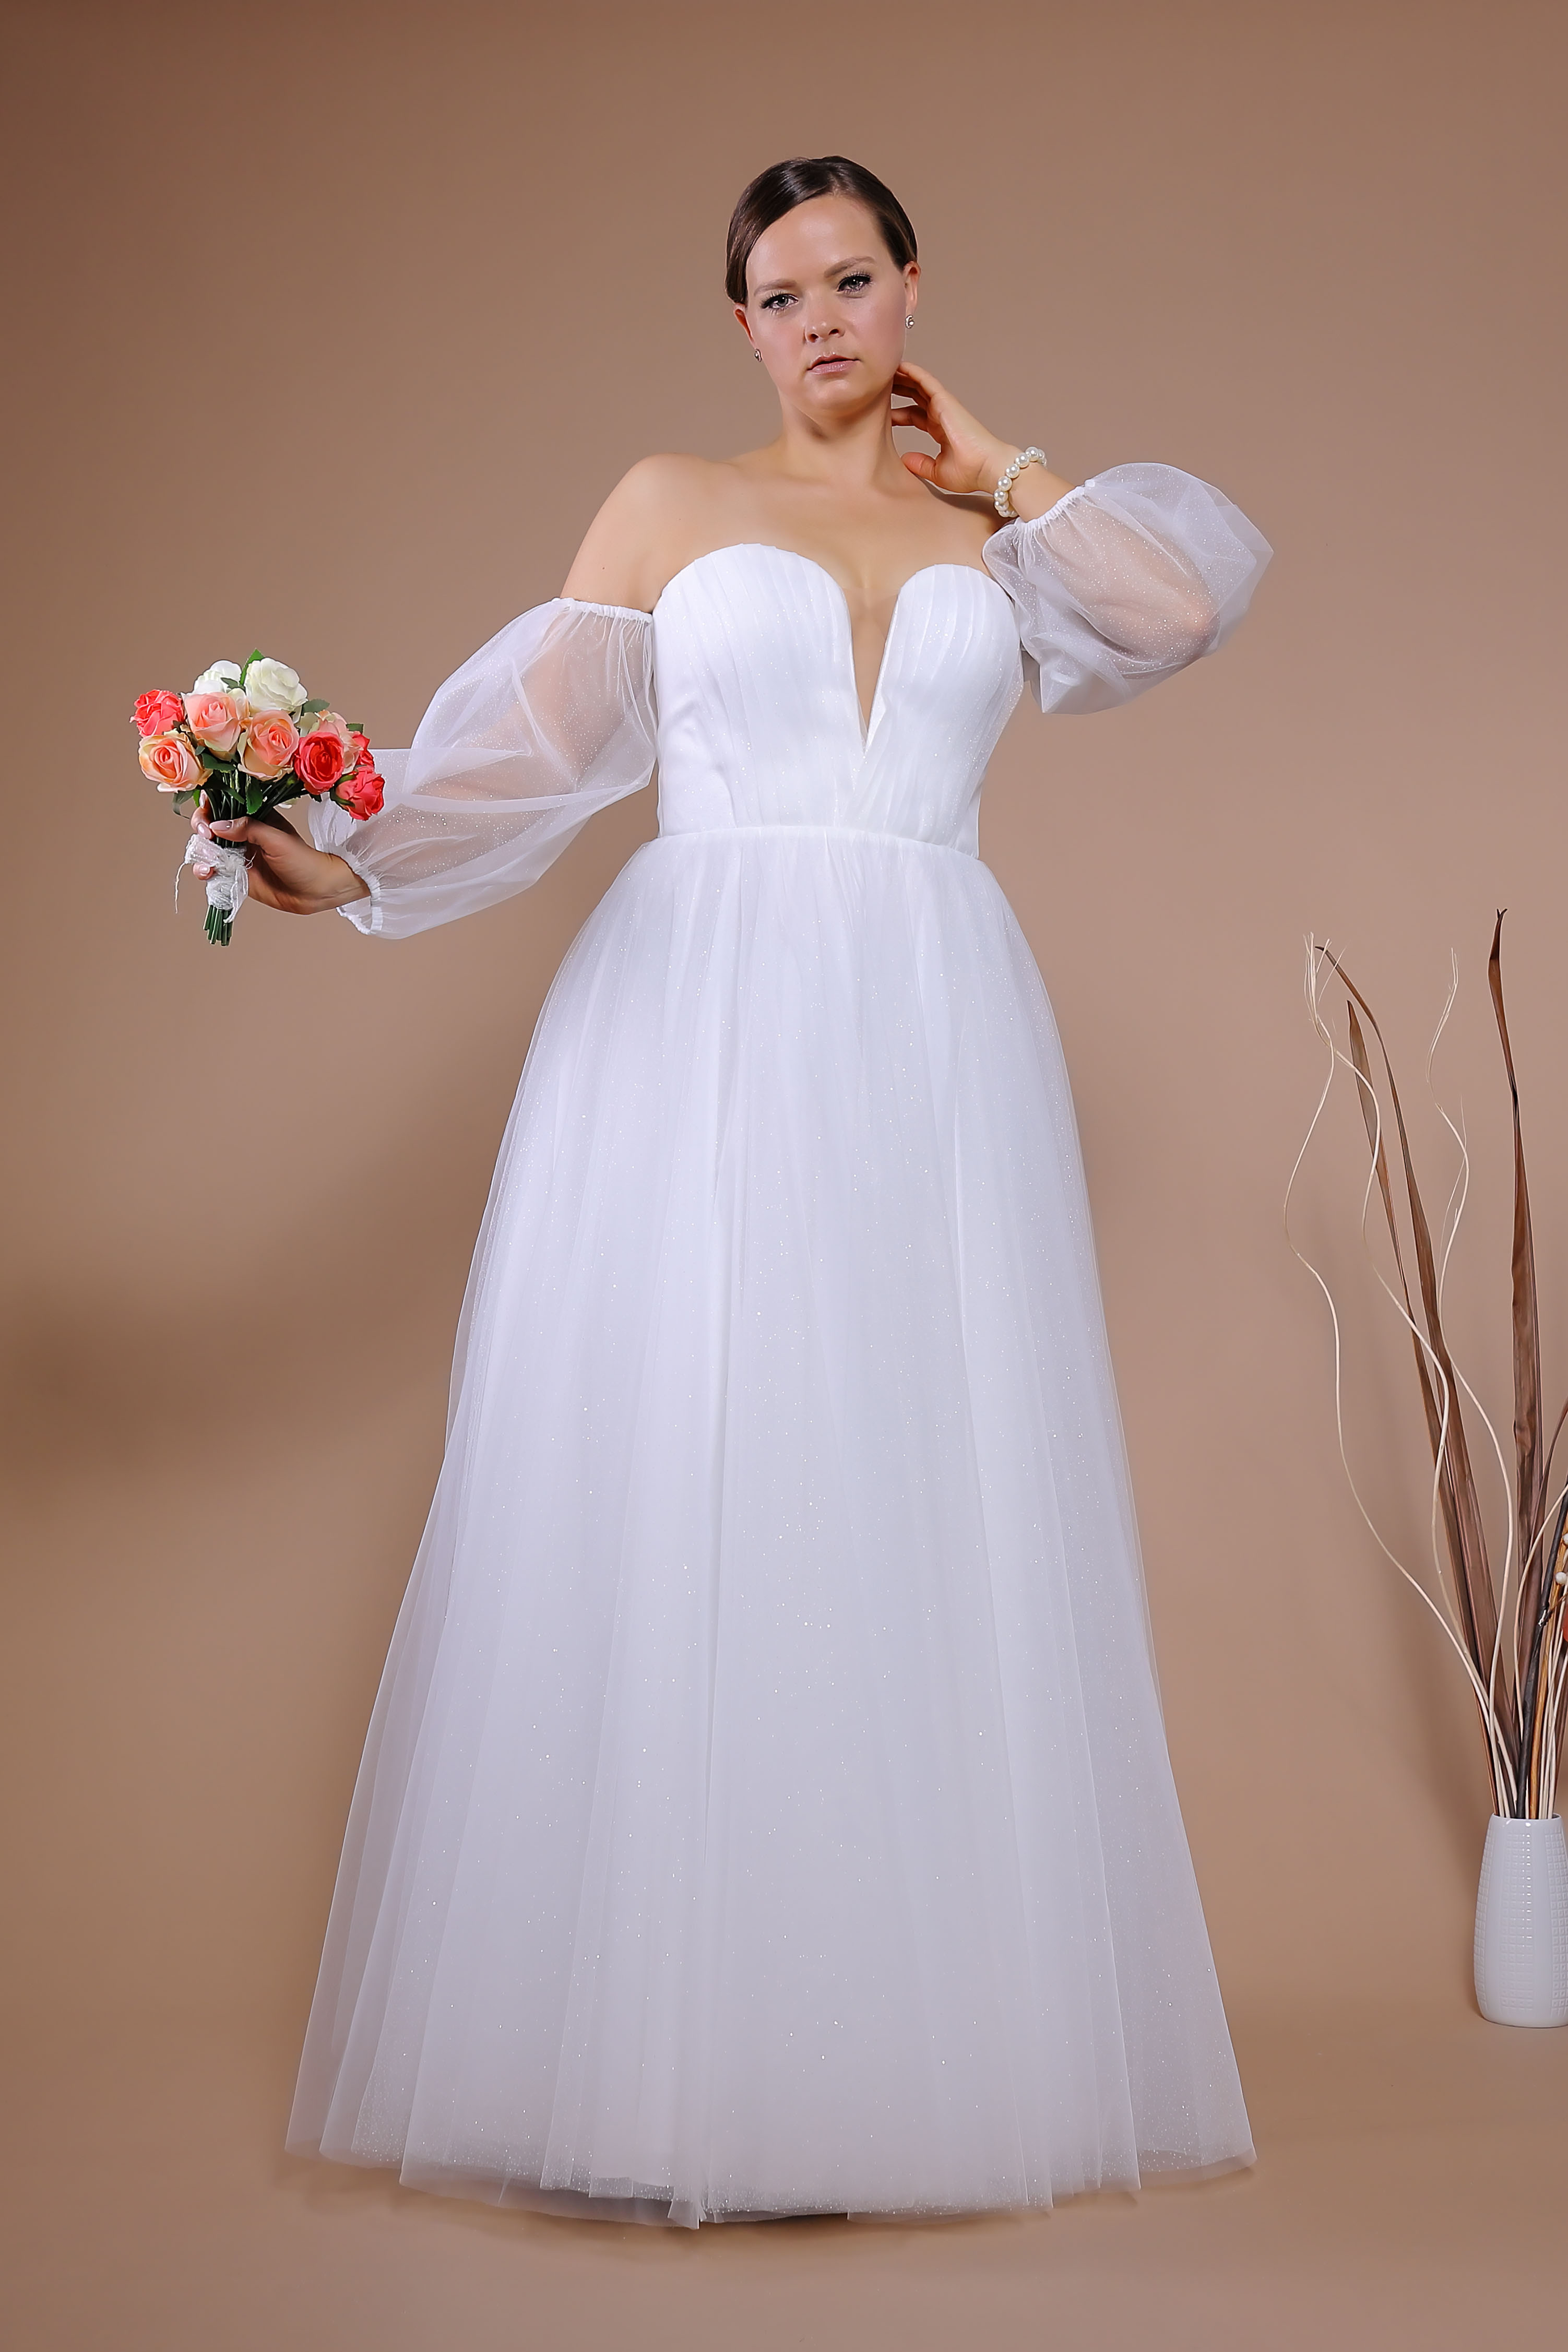 Schantal Brautkleid aus der Kollektion „Queen XXL“, Modell VA 1751 XXL. Foto 1